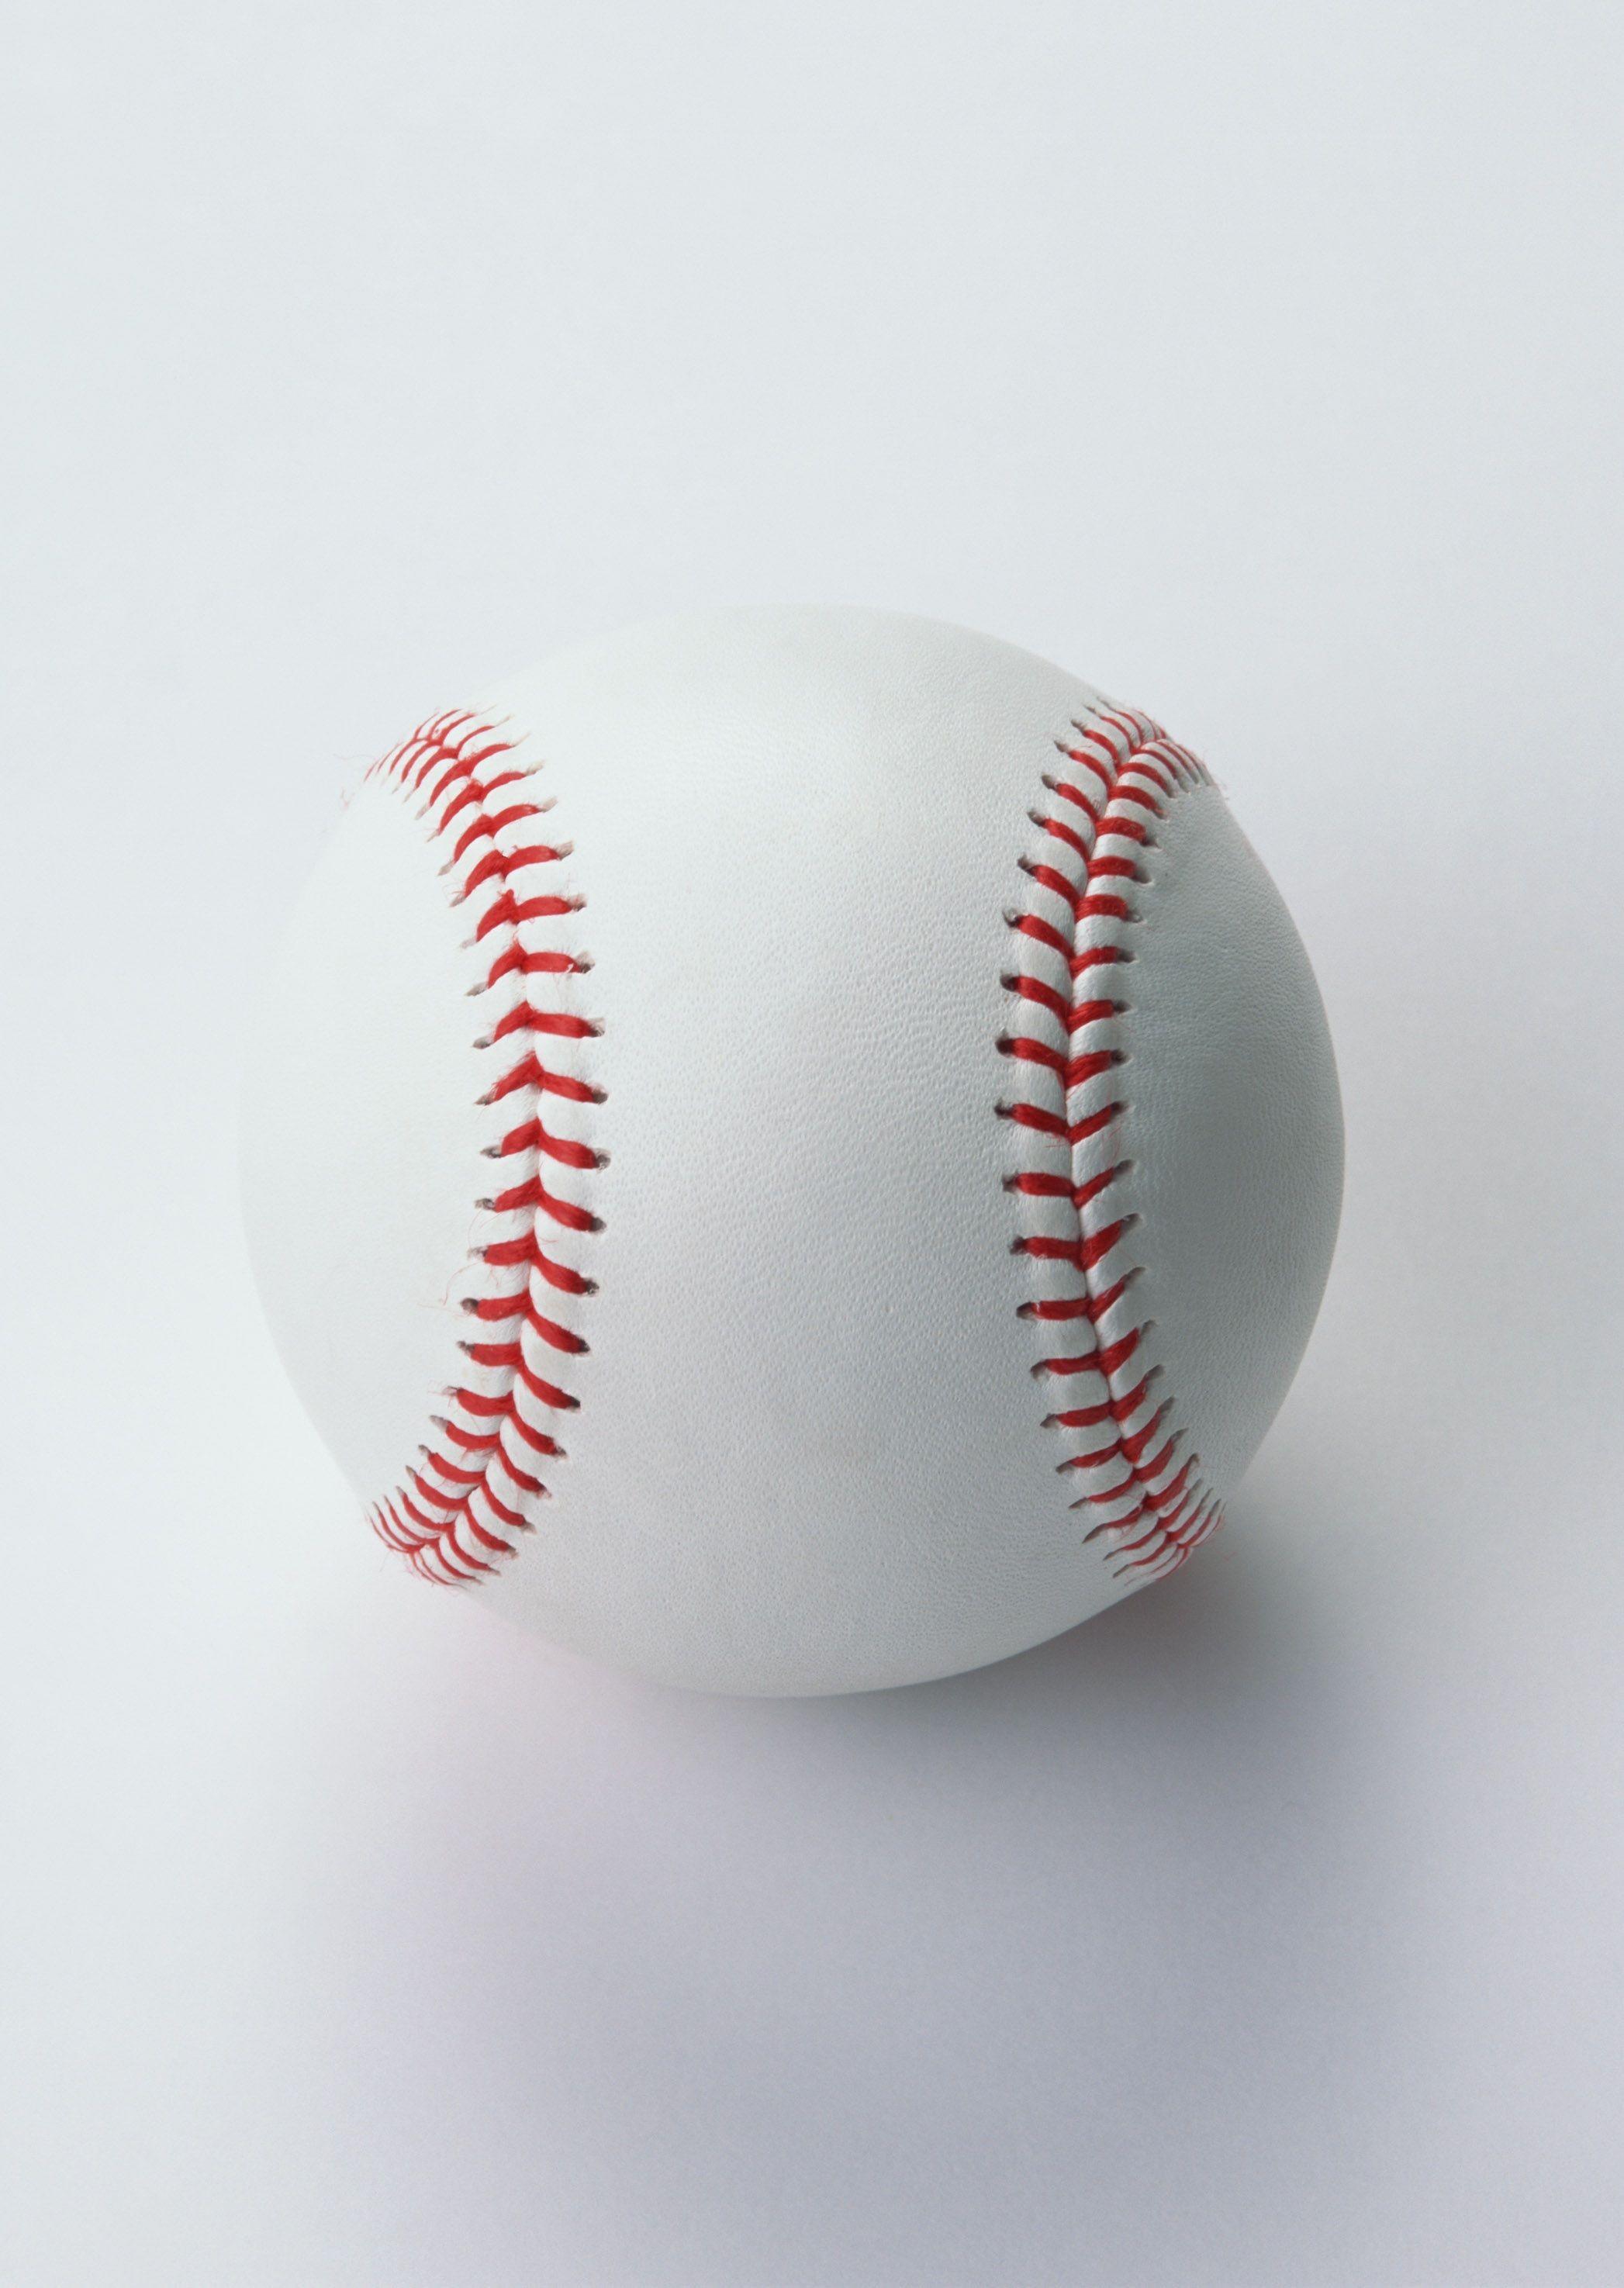 Free Photo of Baseball on white Background